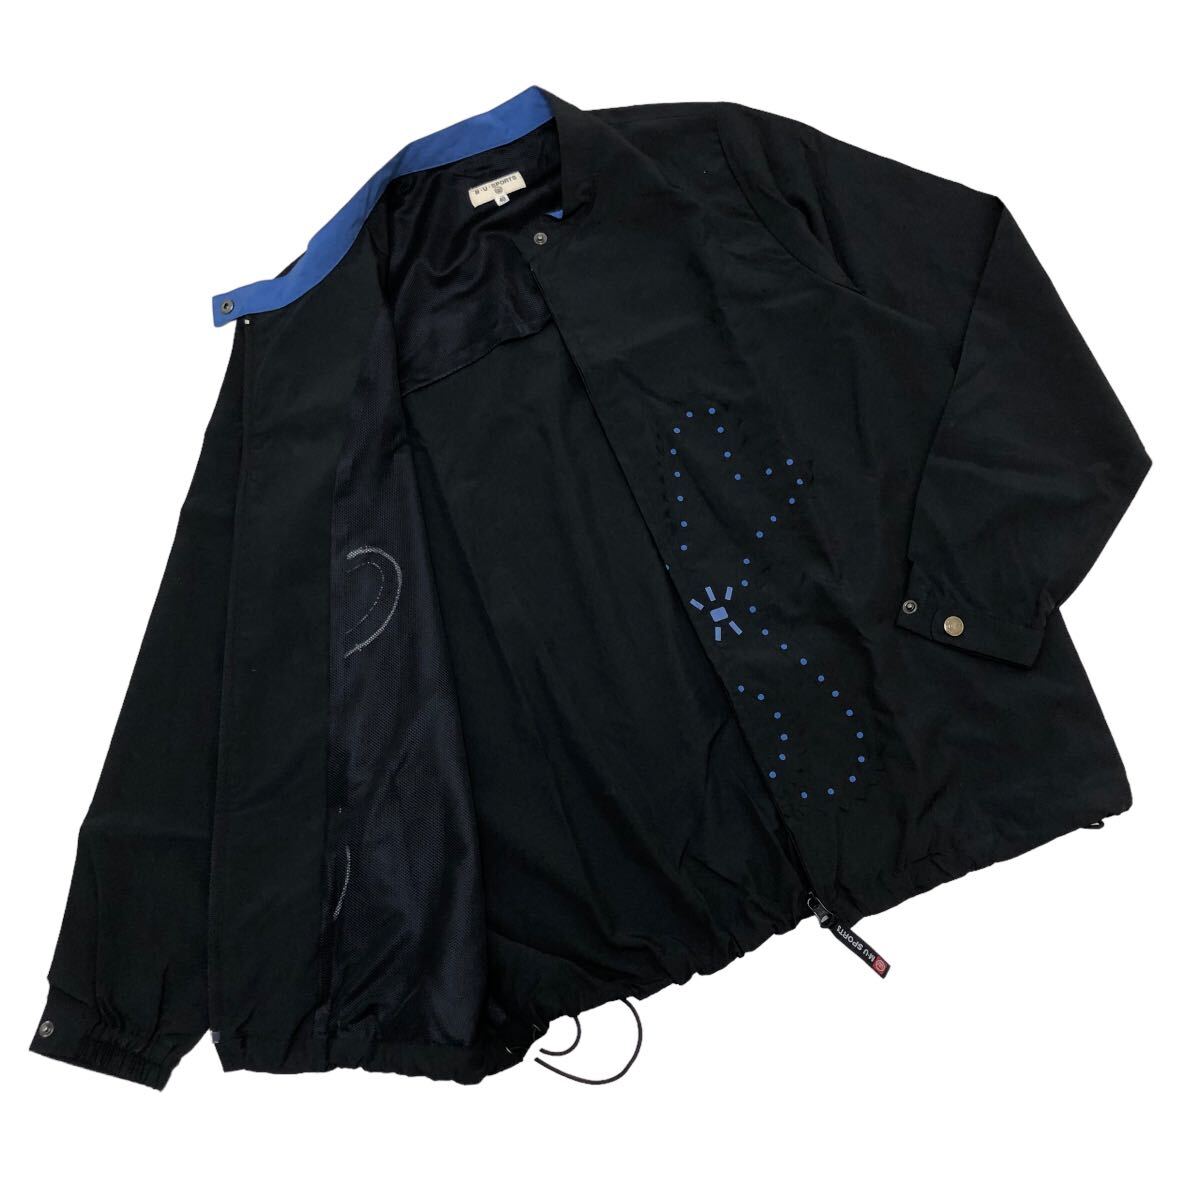 B373 MUSPORTS エムユースポーツ ジップアップ ジャケット アウター 上着 羽織り 長袖 薄手 ブラック 黒 レディース 40_画像2